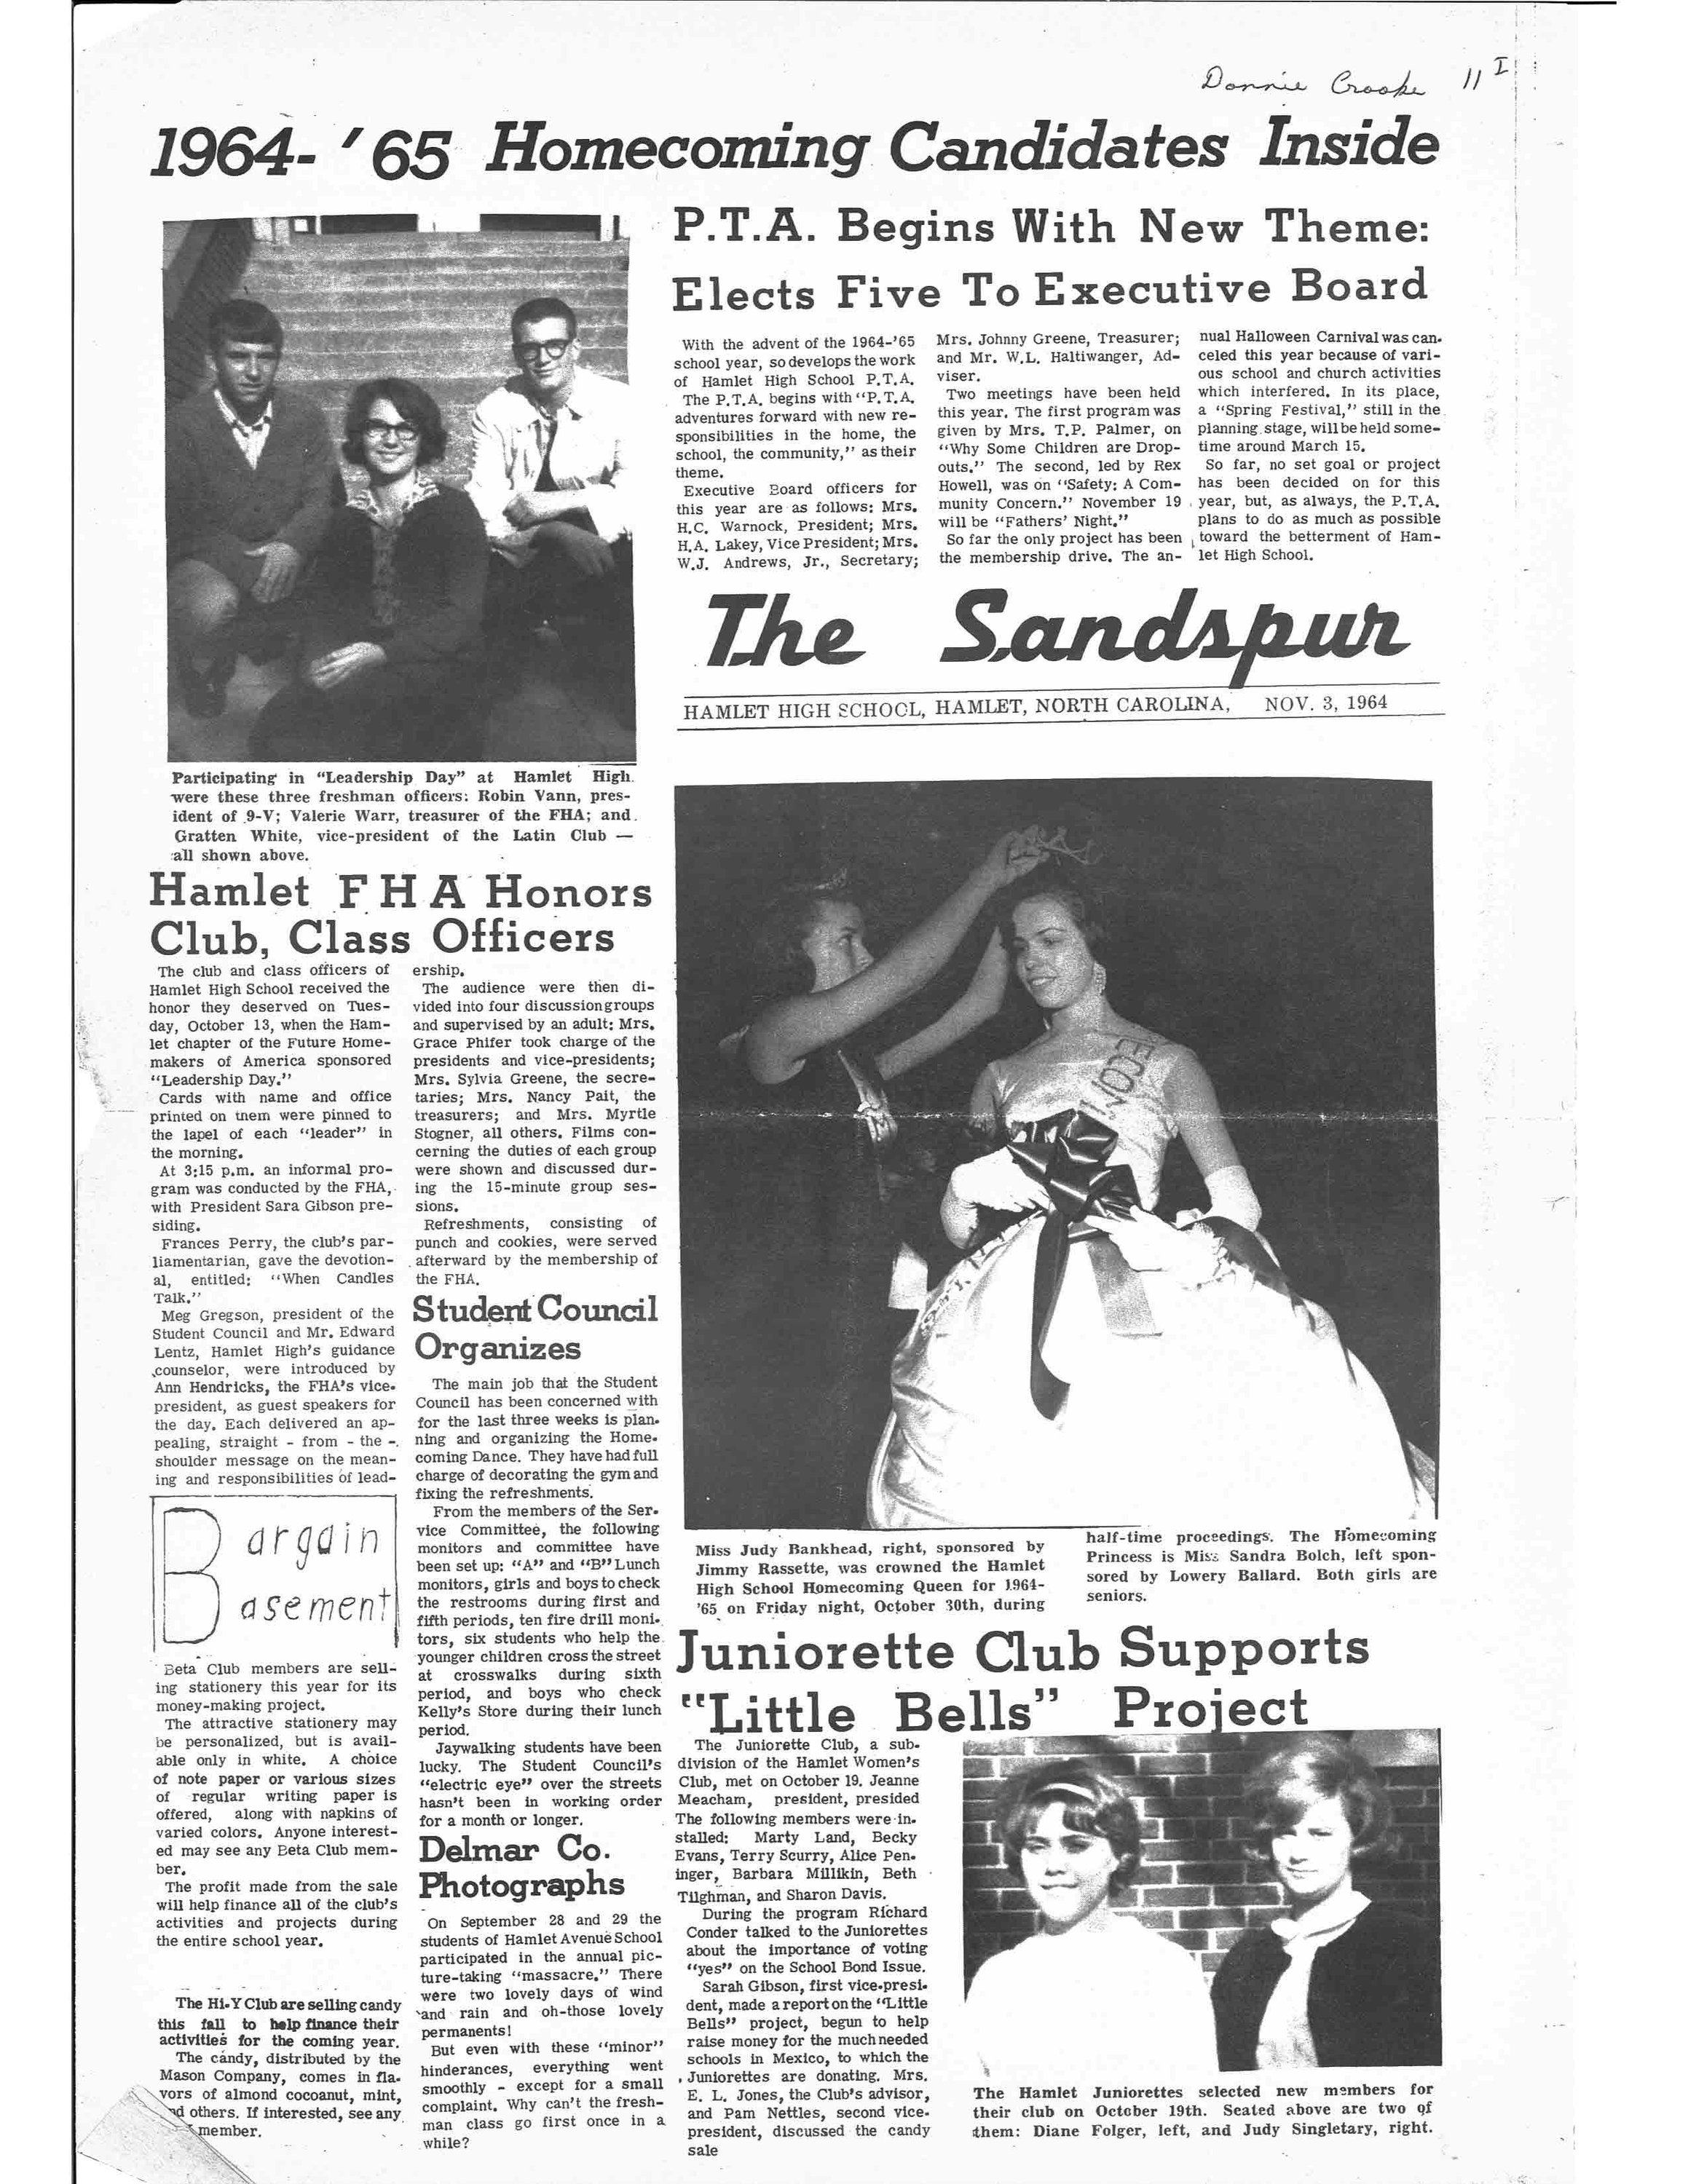 Sandspur November 1964 1.jpg